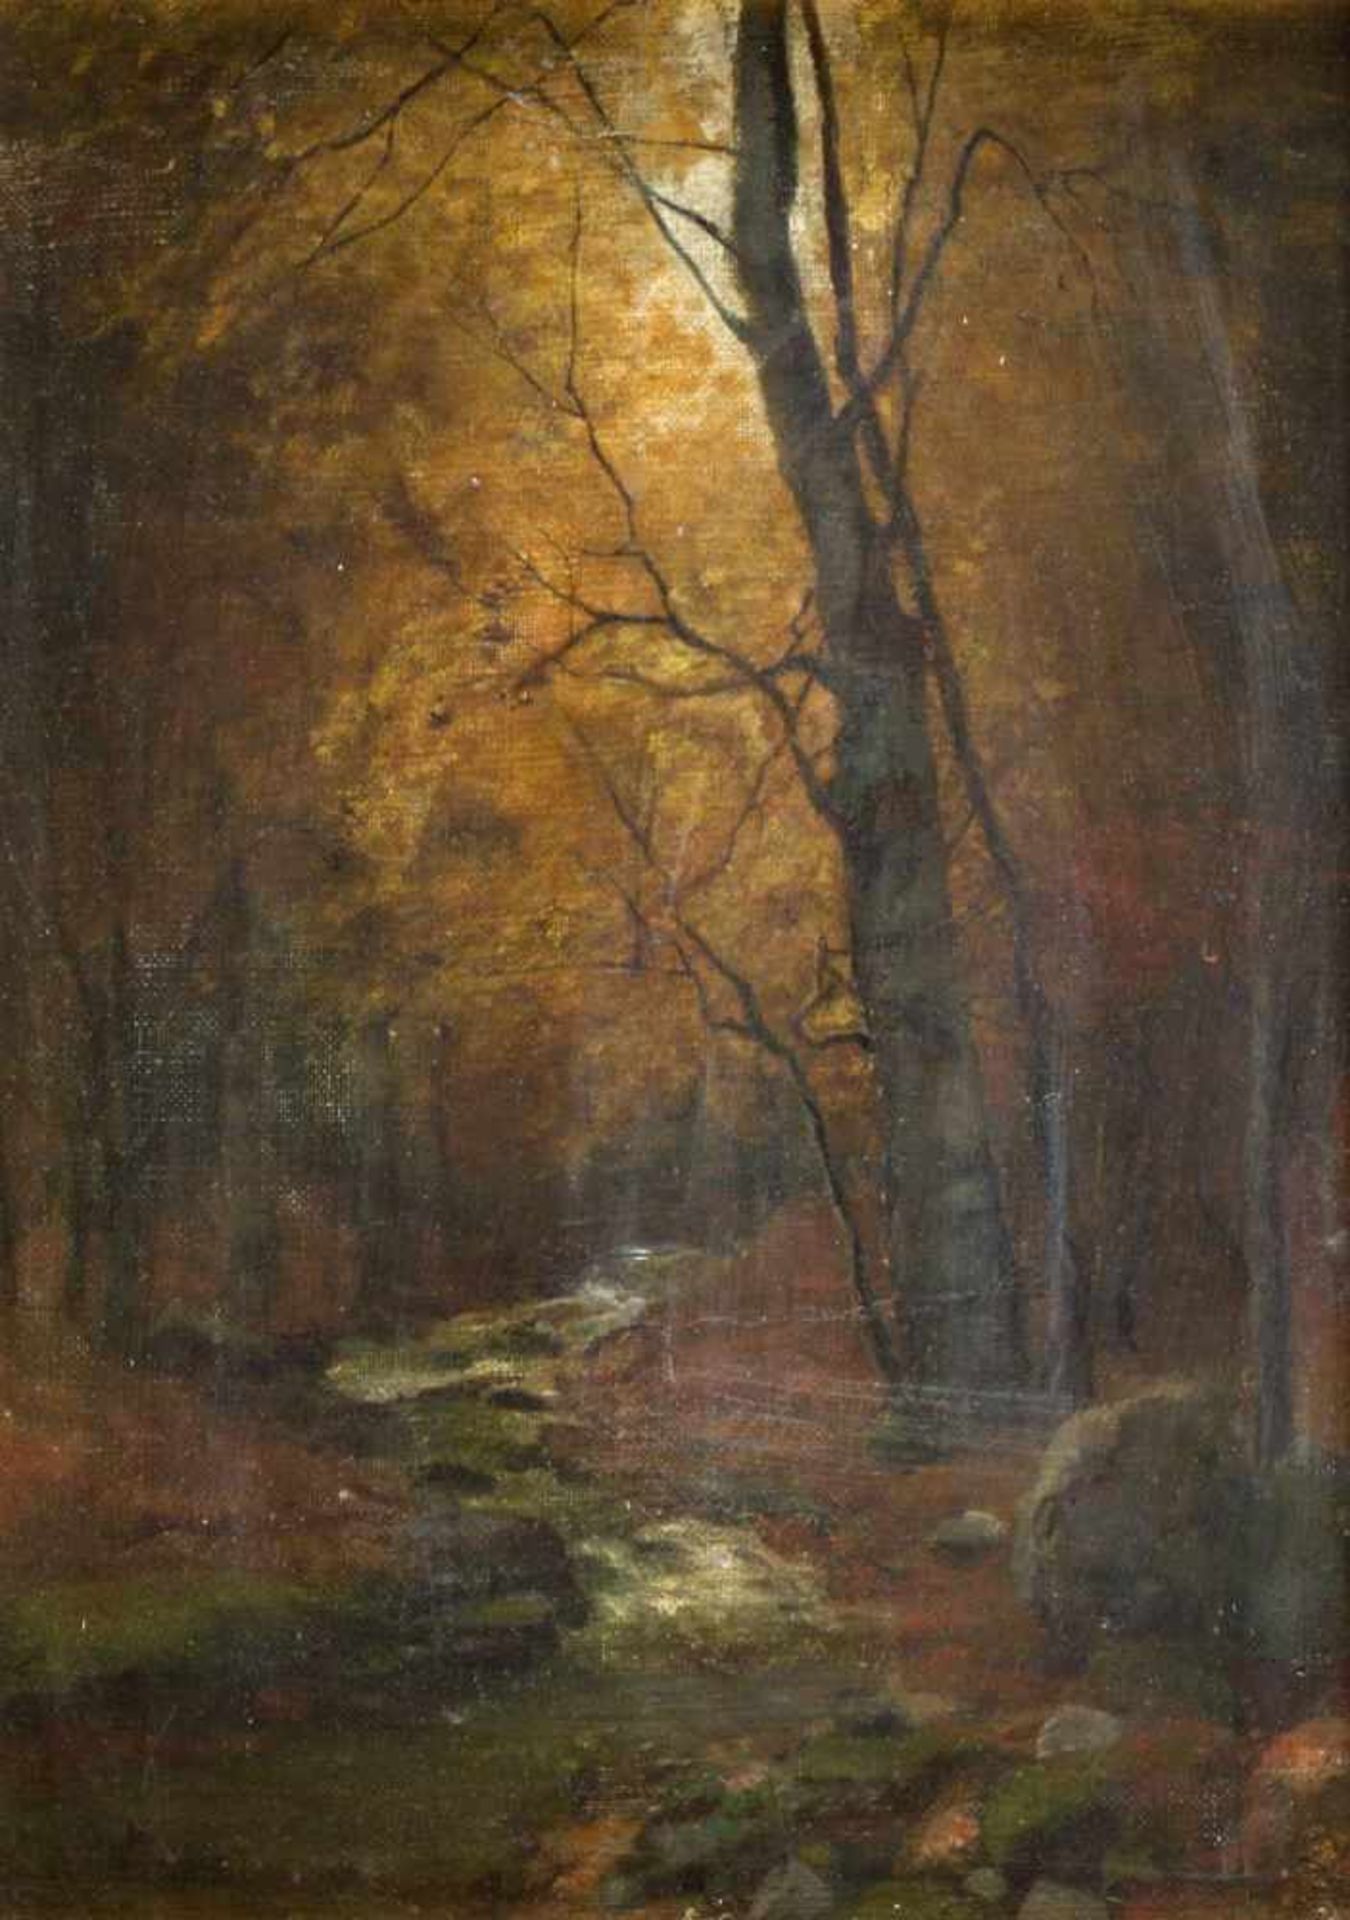 Correggio u.a.Herbstlicher Wald. Straßenmusikanten. 2 Gem. Öl/Lwd. bzw. Holz. Sign. 35 x 28 cm. - Bild 2 aus 6